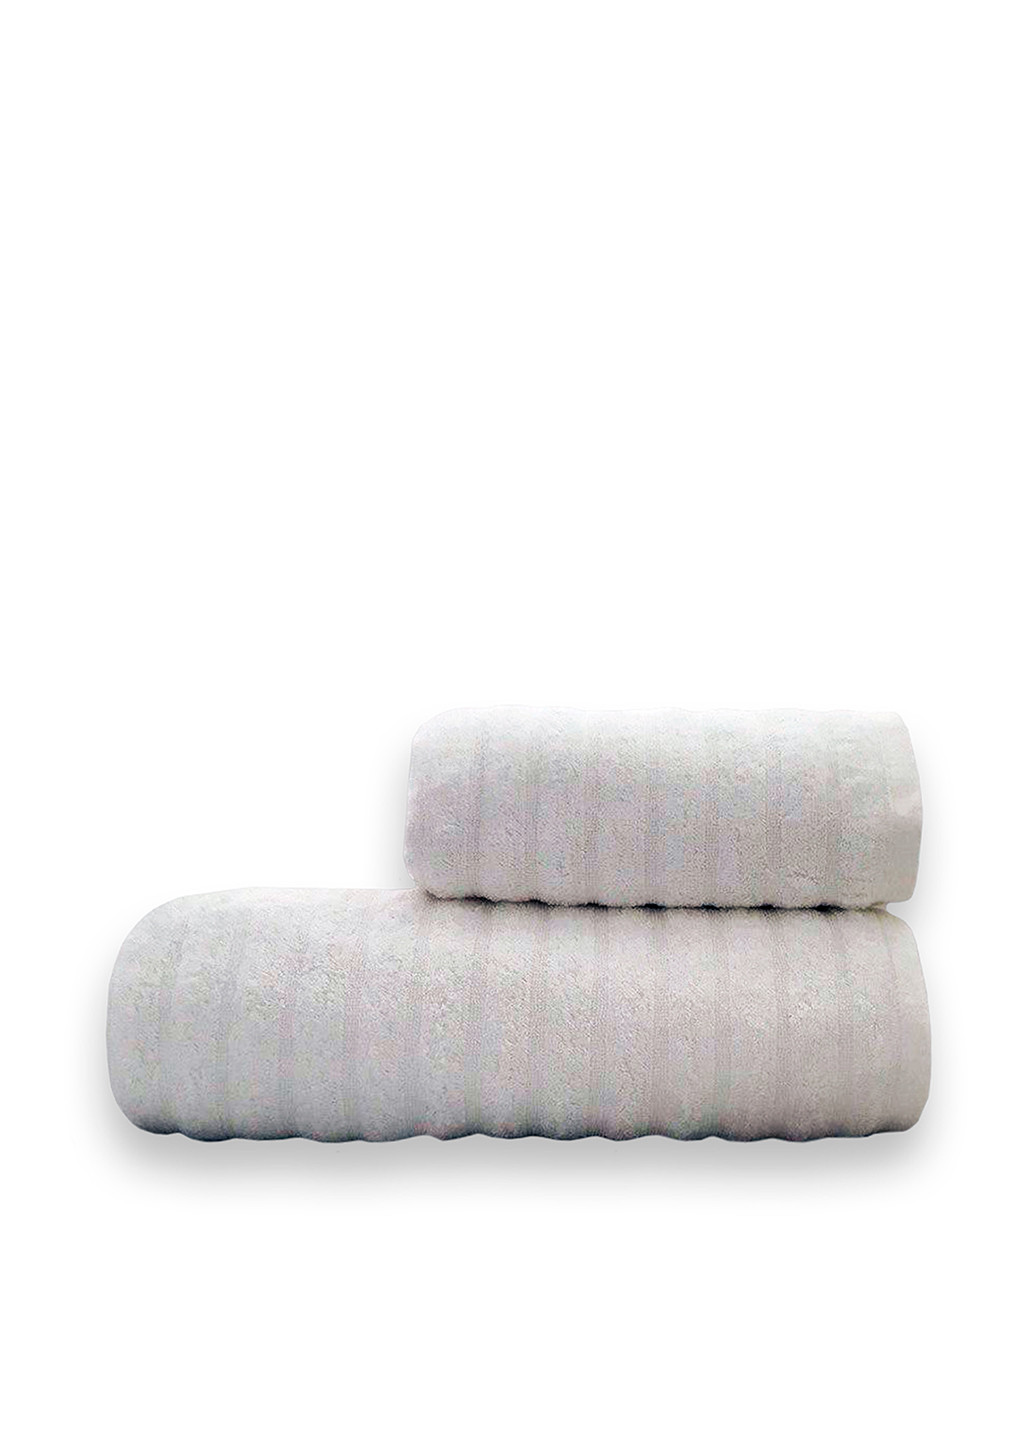 Romeo Soft полотенце, 50х90 см однотонный белый производство - Турция